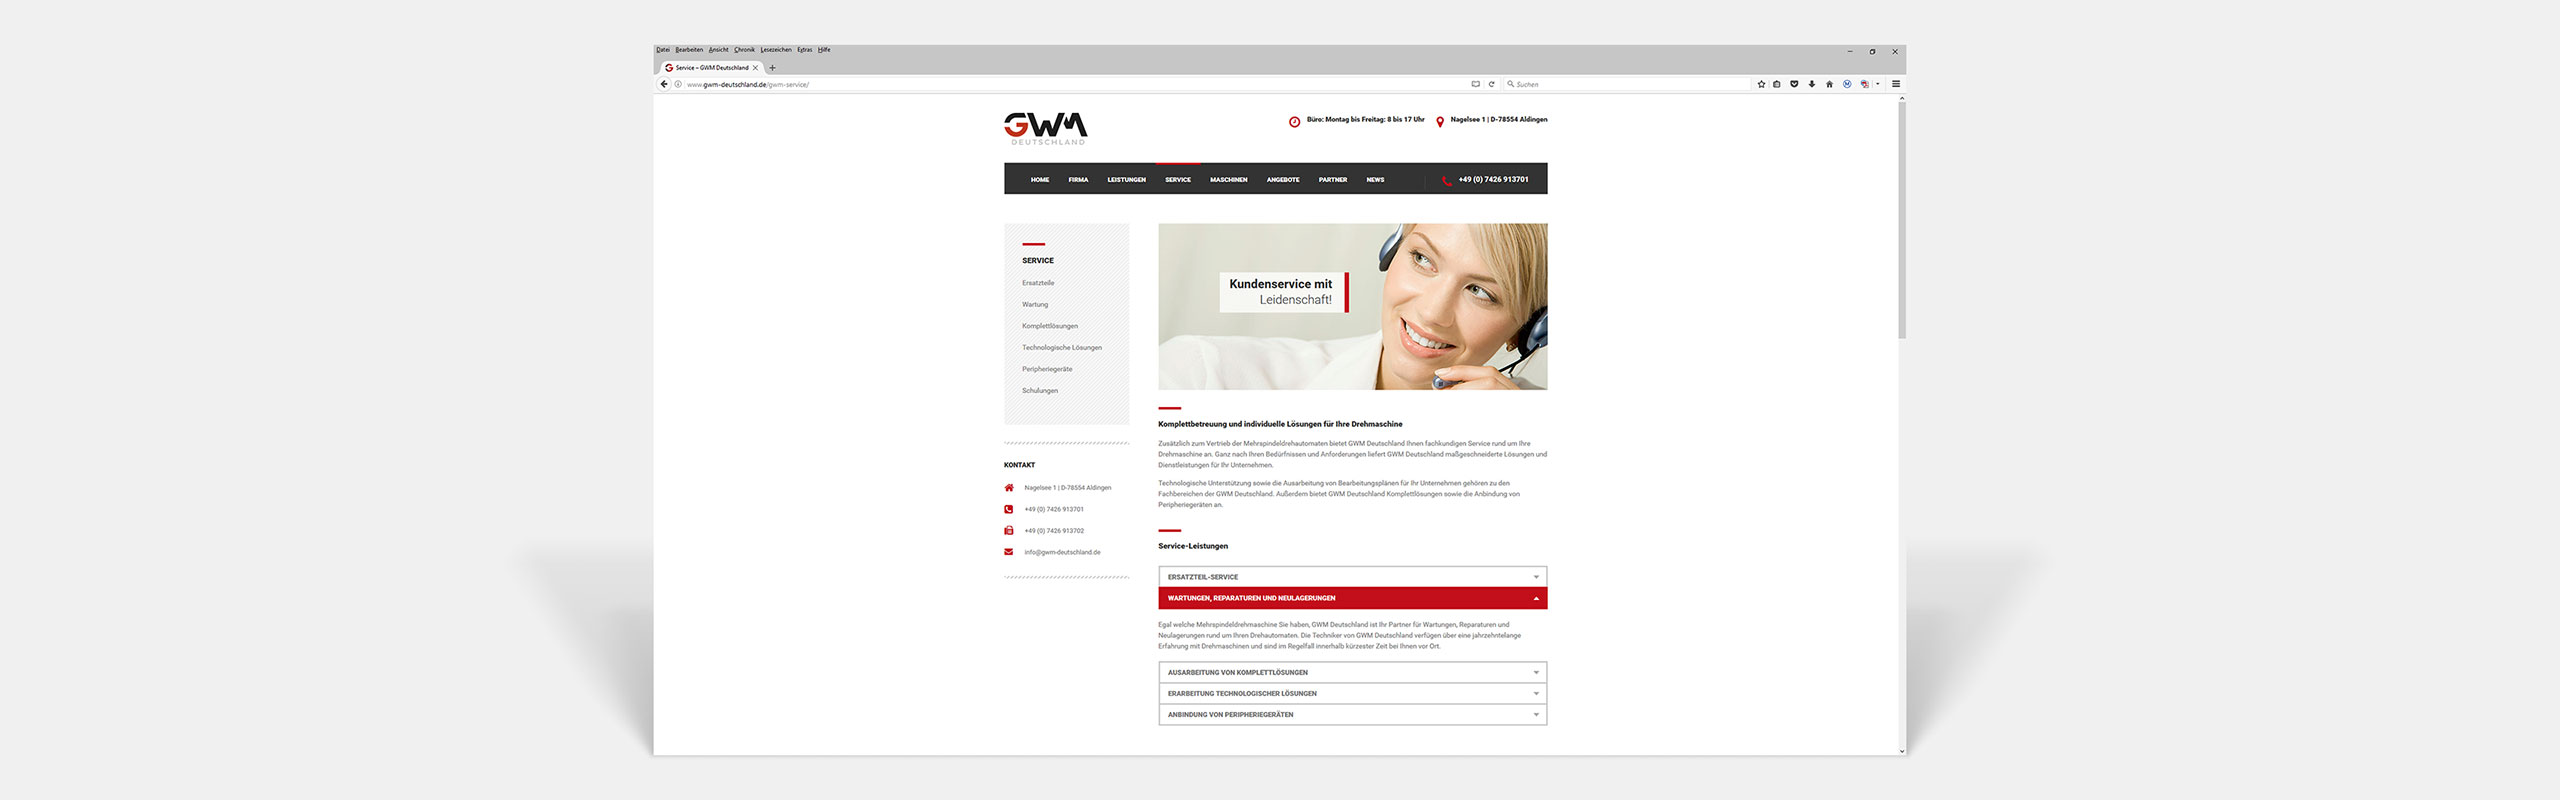 GWM Deutschland GmbH Responsive Website Service by Hirschburg Werbeagentur